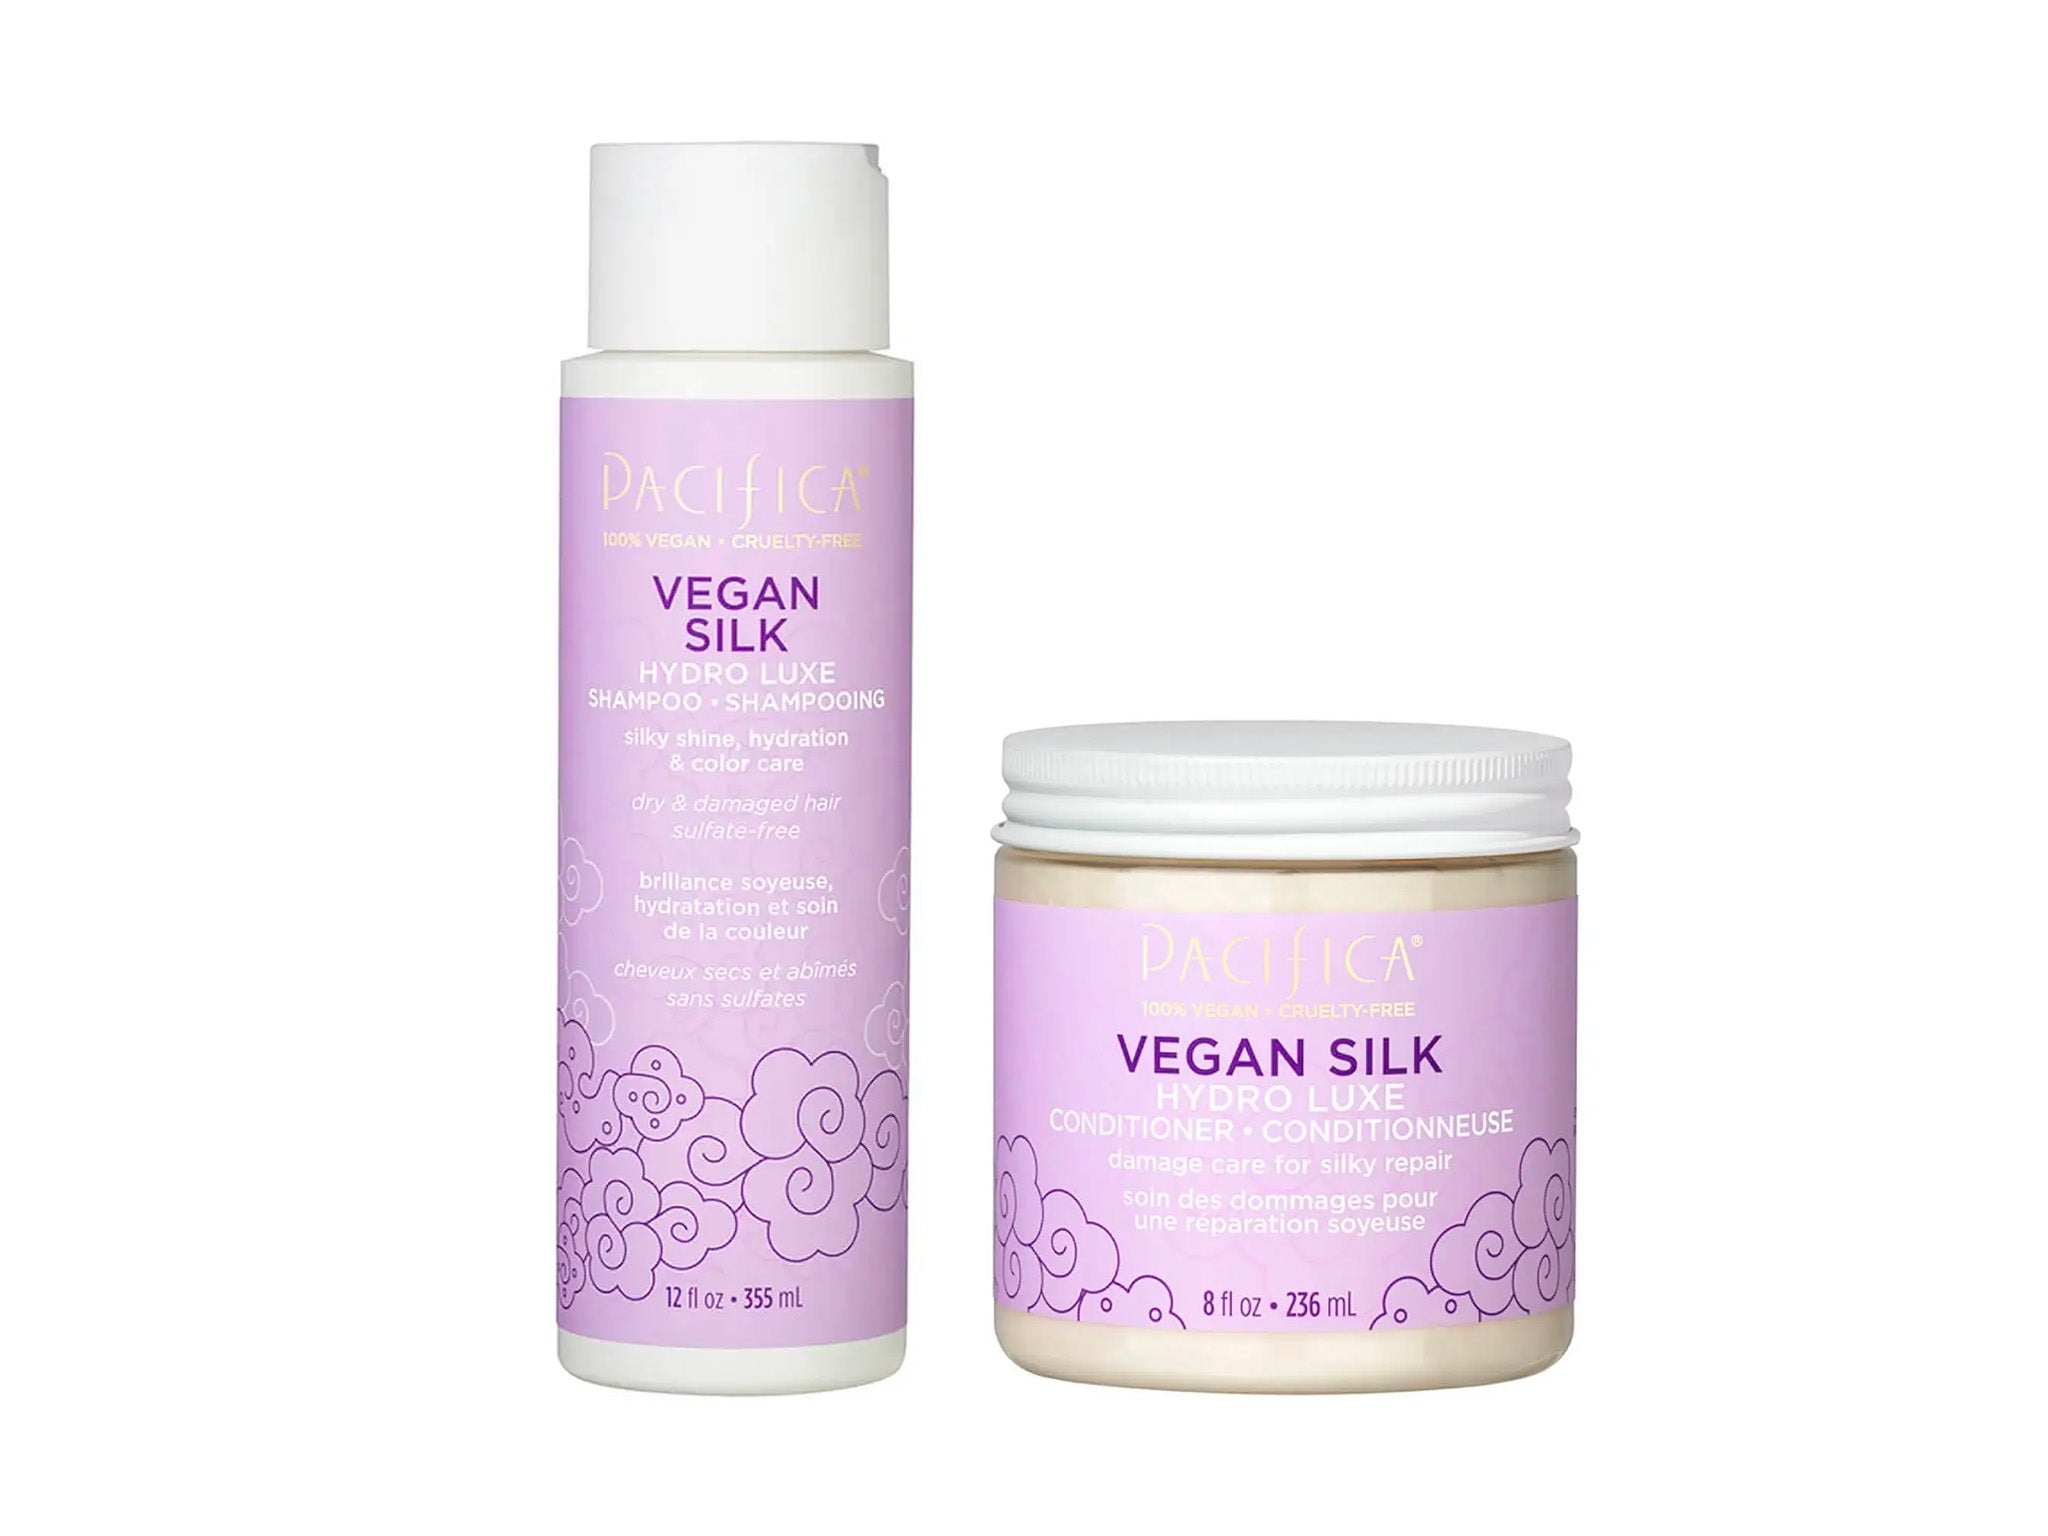 Pacifia vegan silk hydro luxe shampoo and conditioner 